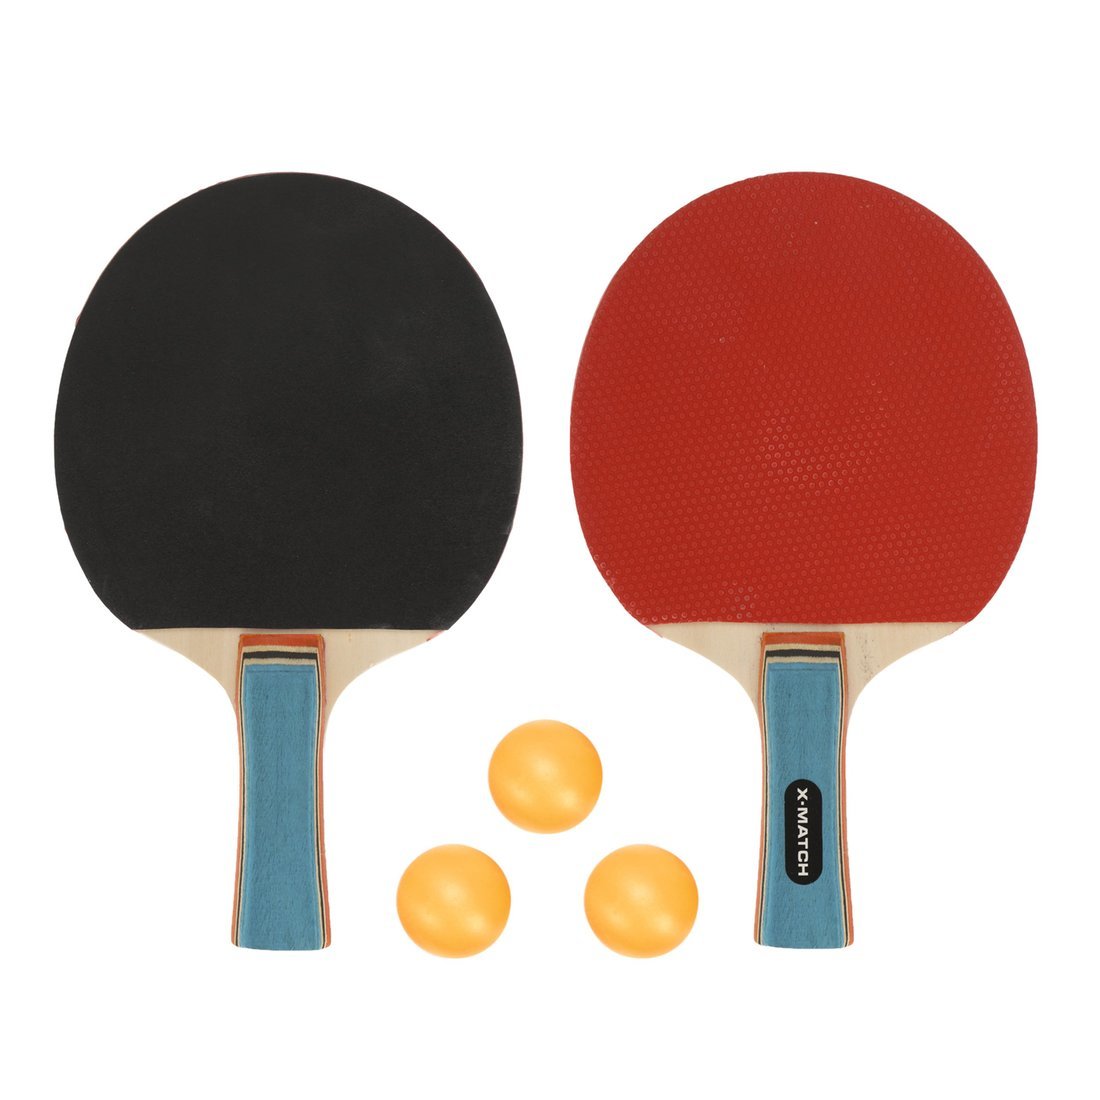 фото Игровой набор x-match для настольного тенниса, 2 ракетки, 3 шарика 636270